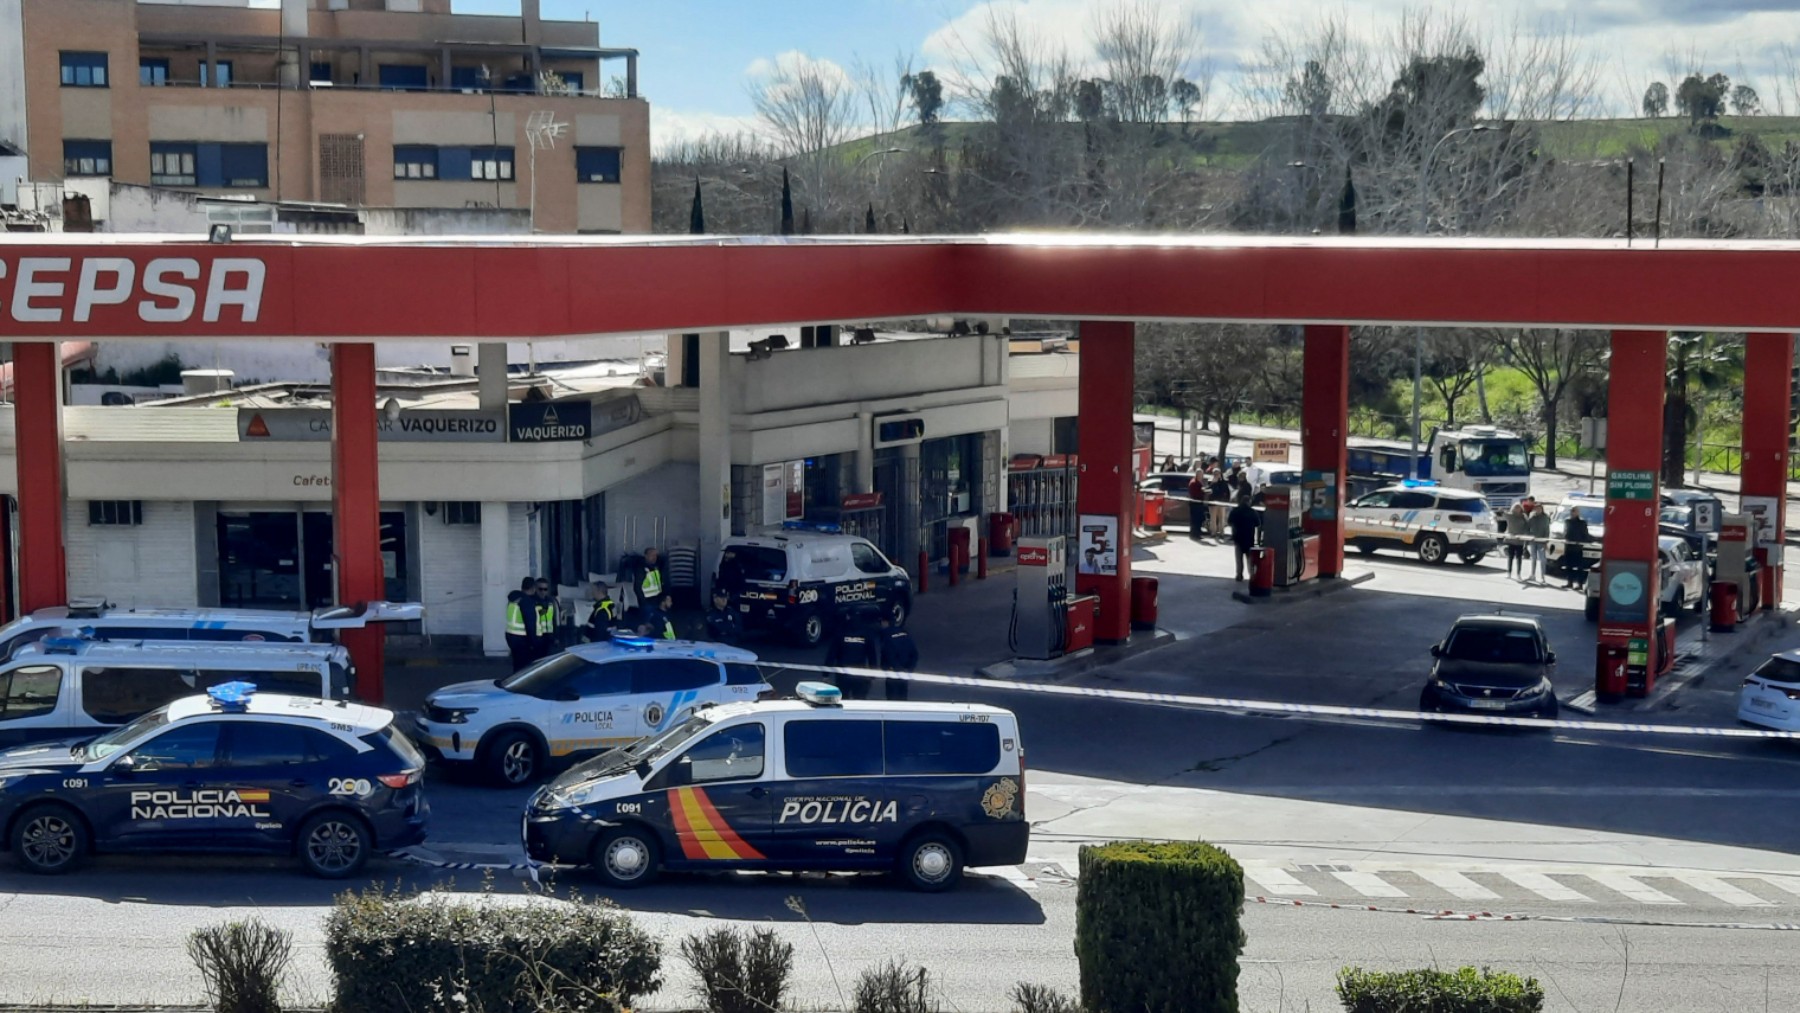 Varias patrullas de la Policía en la gasolinera. (Foto: EFE)